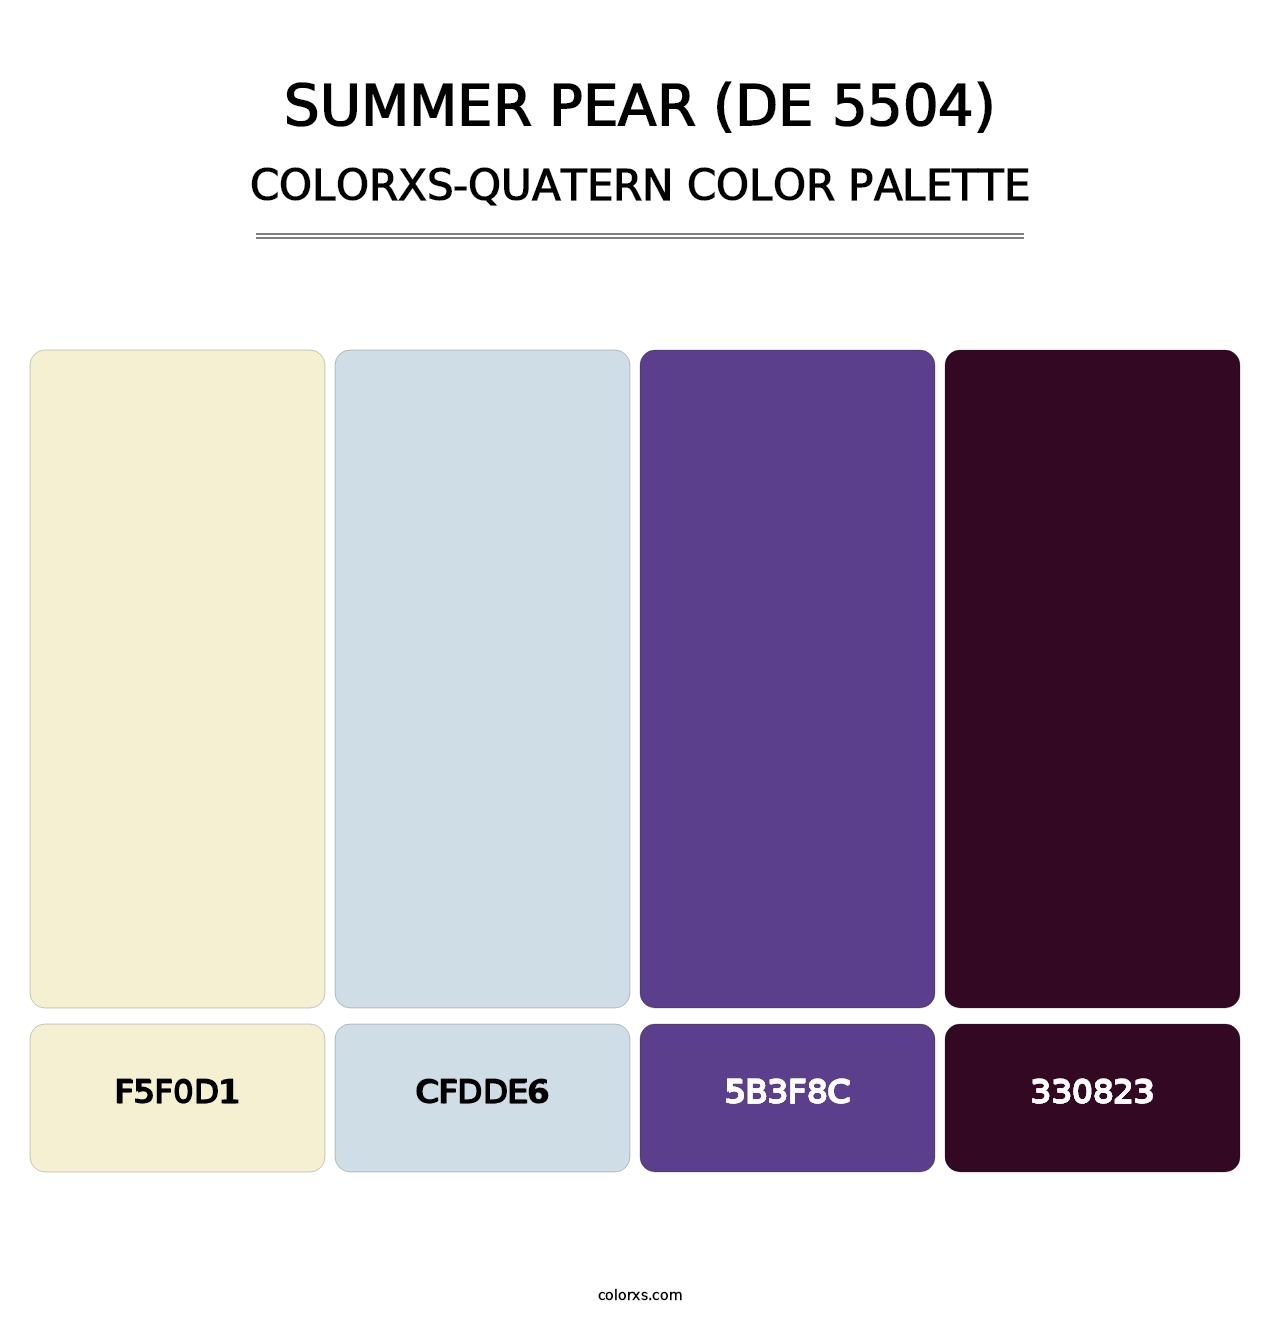 Summer Pear (DE 5504) - Colorxs Quatern Palette